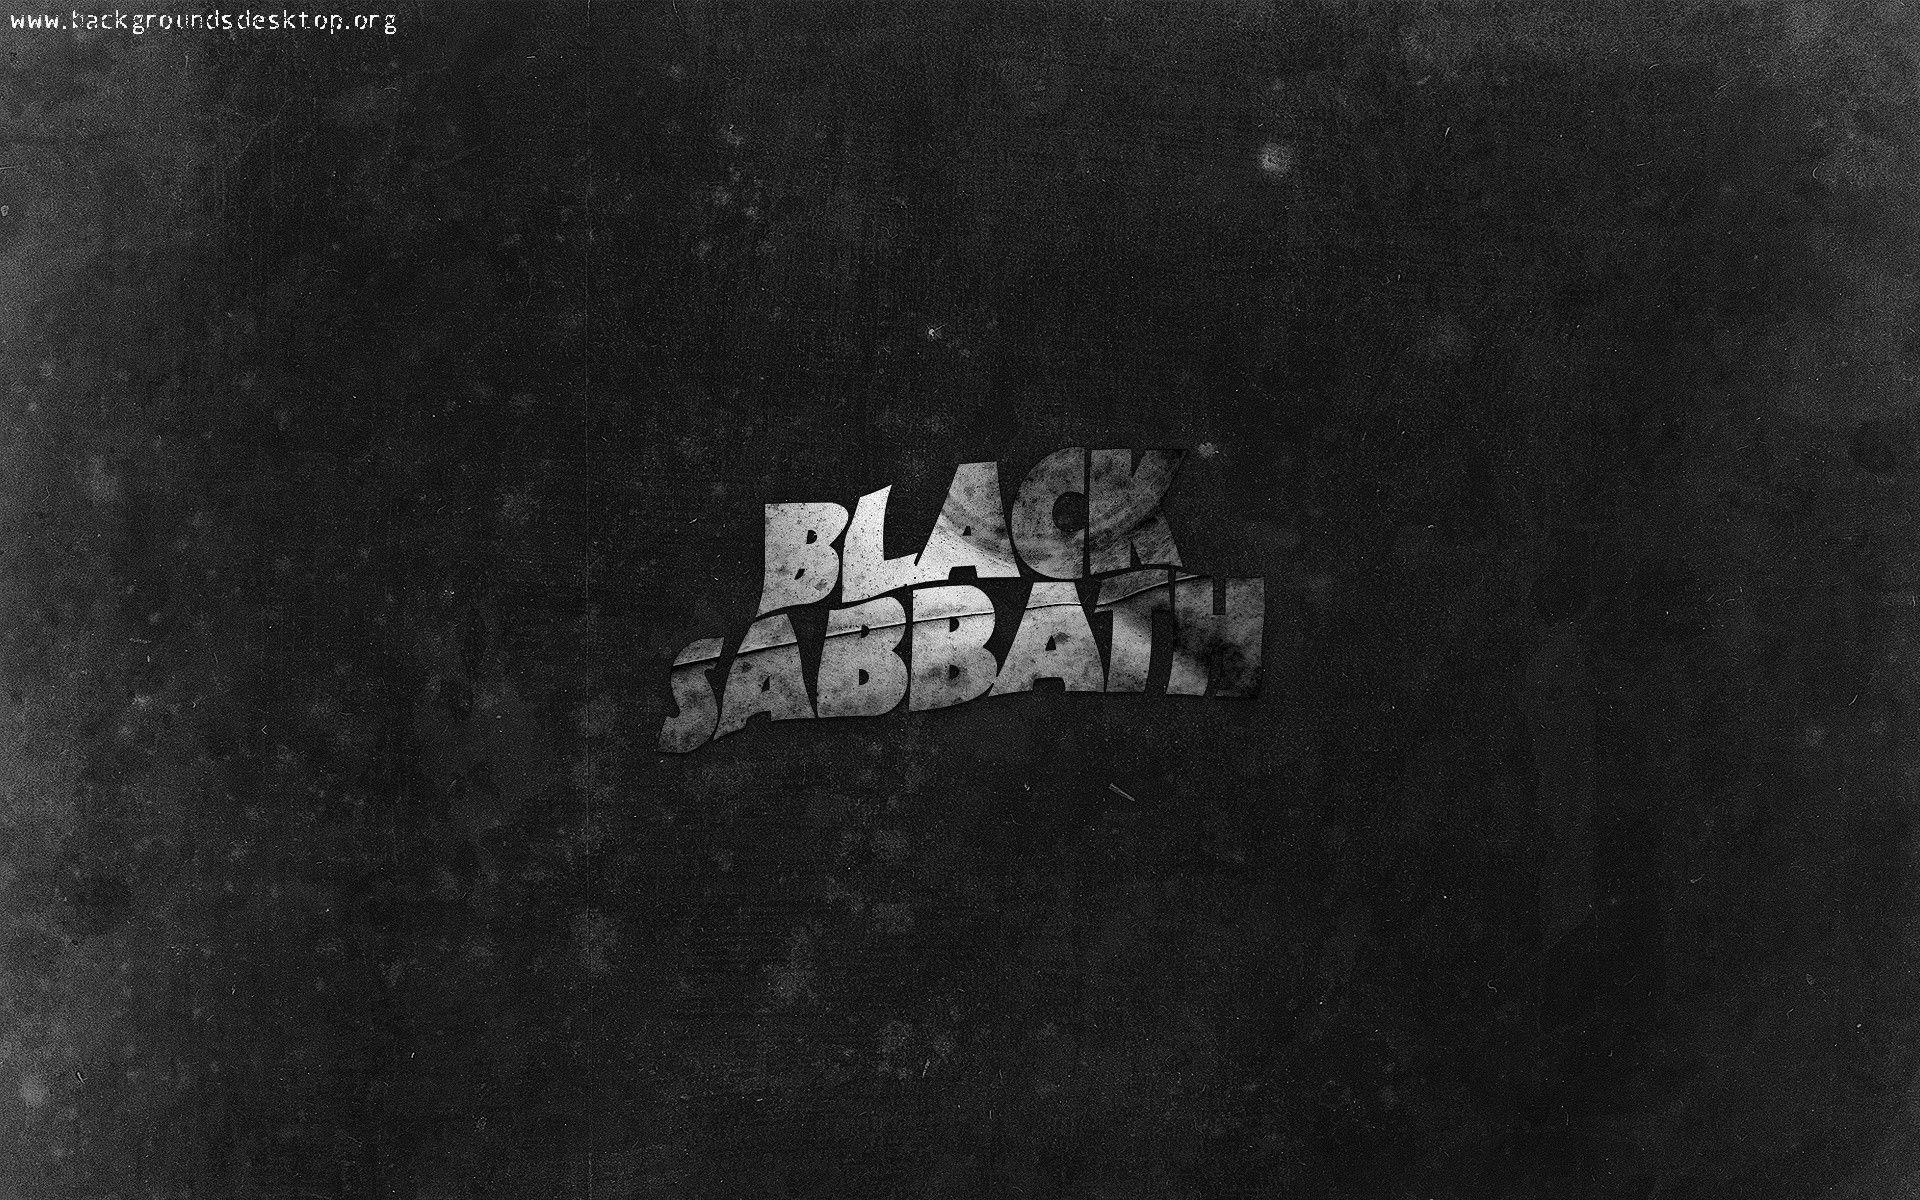 Wallpaper For > Black Sabbath Wallpaper 1920x1080